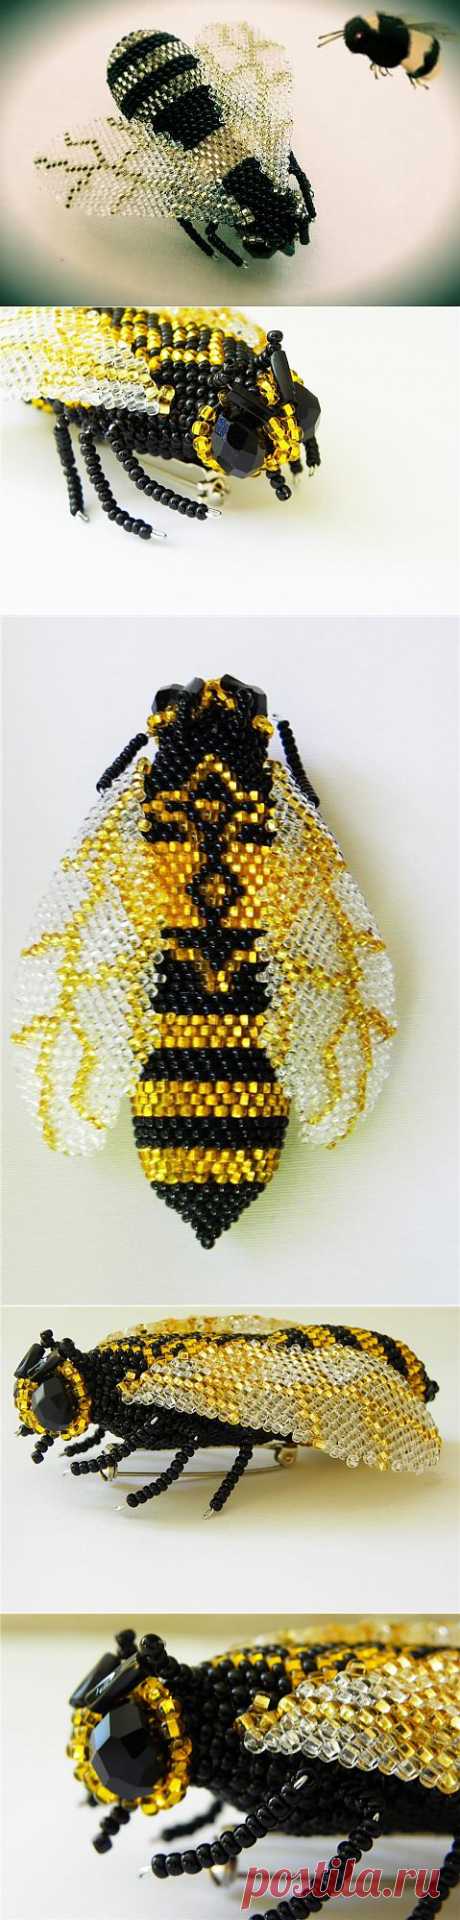 Пчёлки | biser.info - всё о бисере и бисерном творчестве